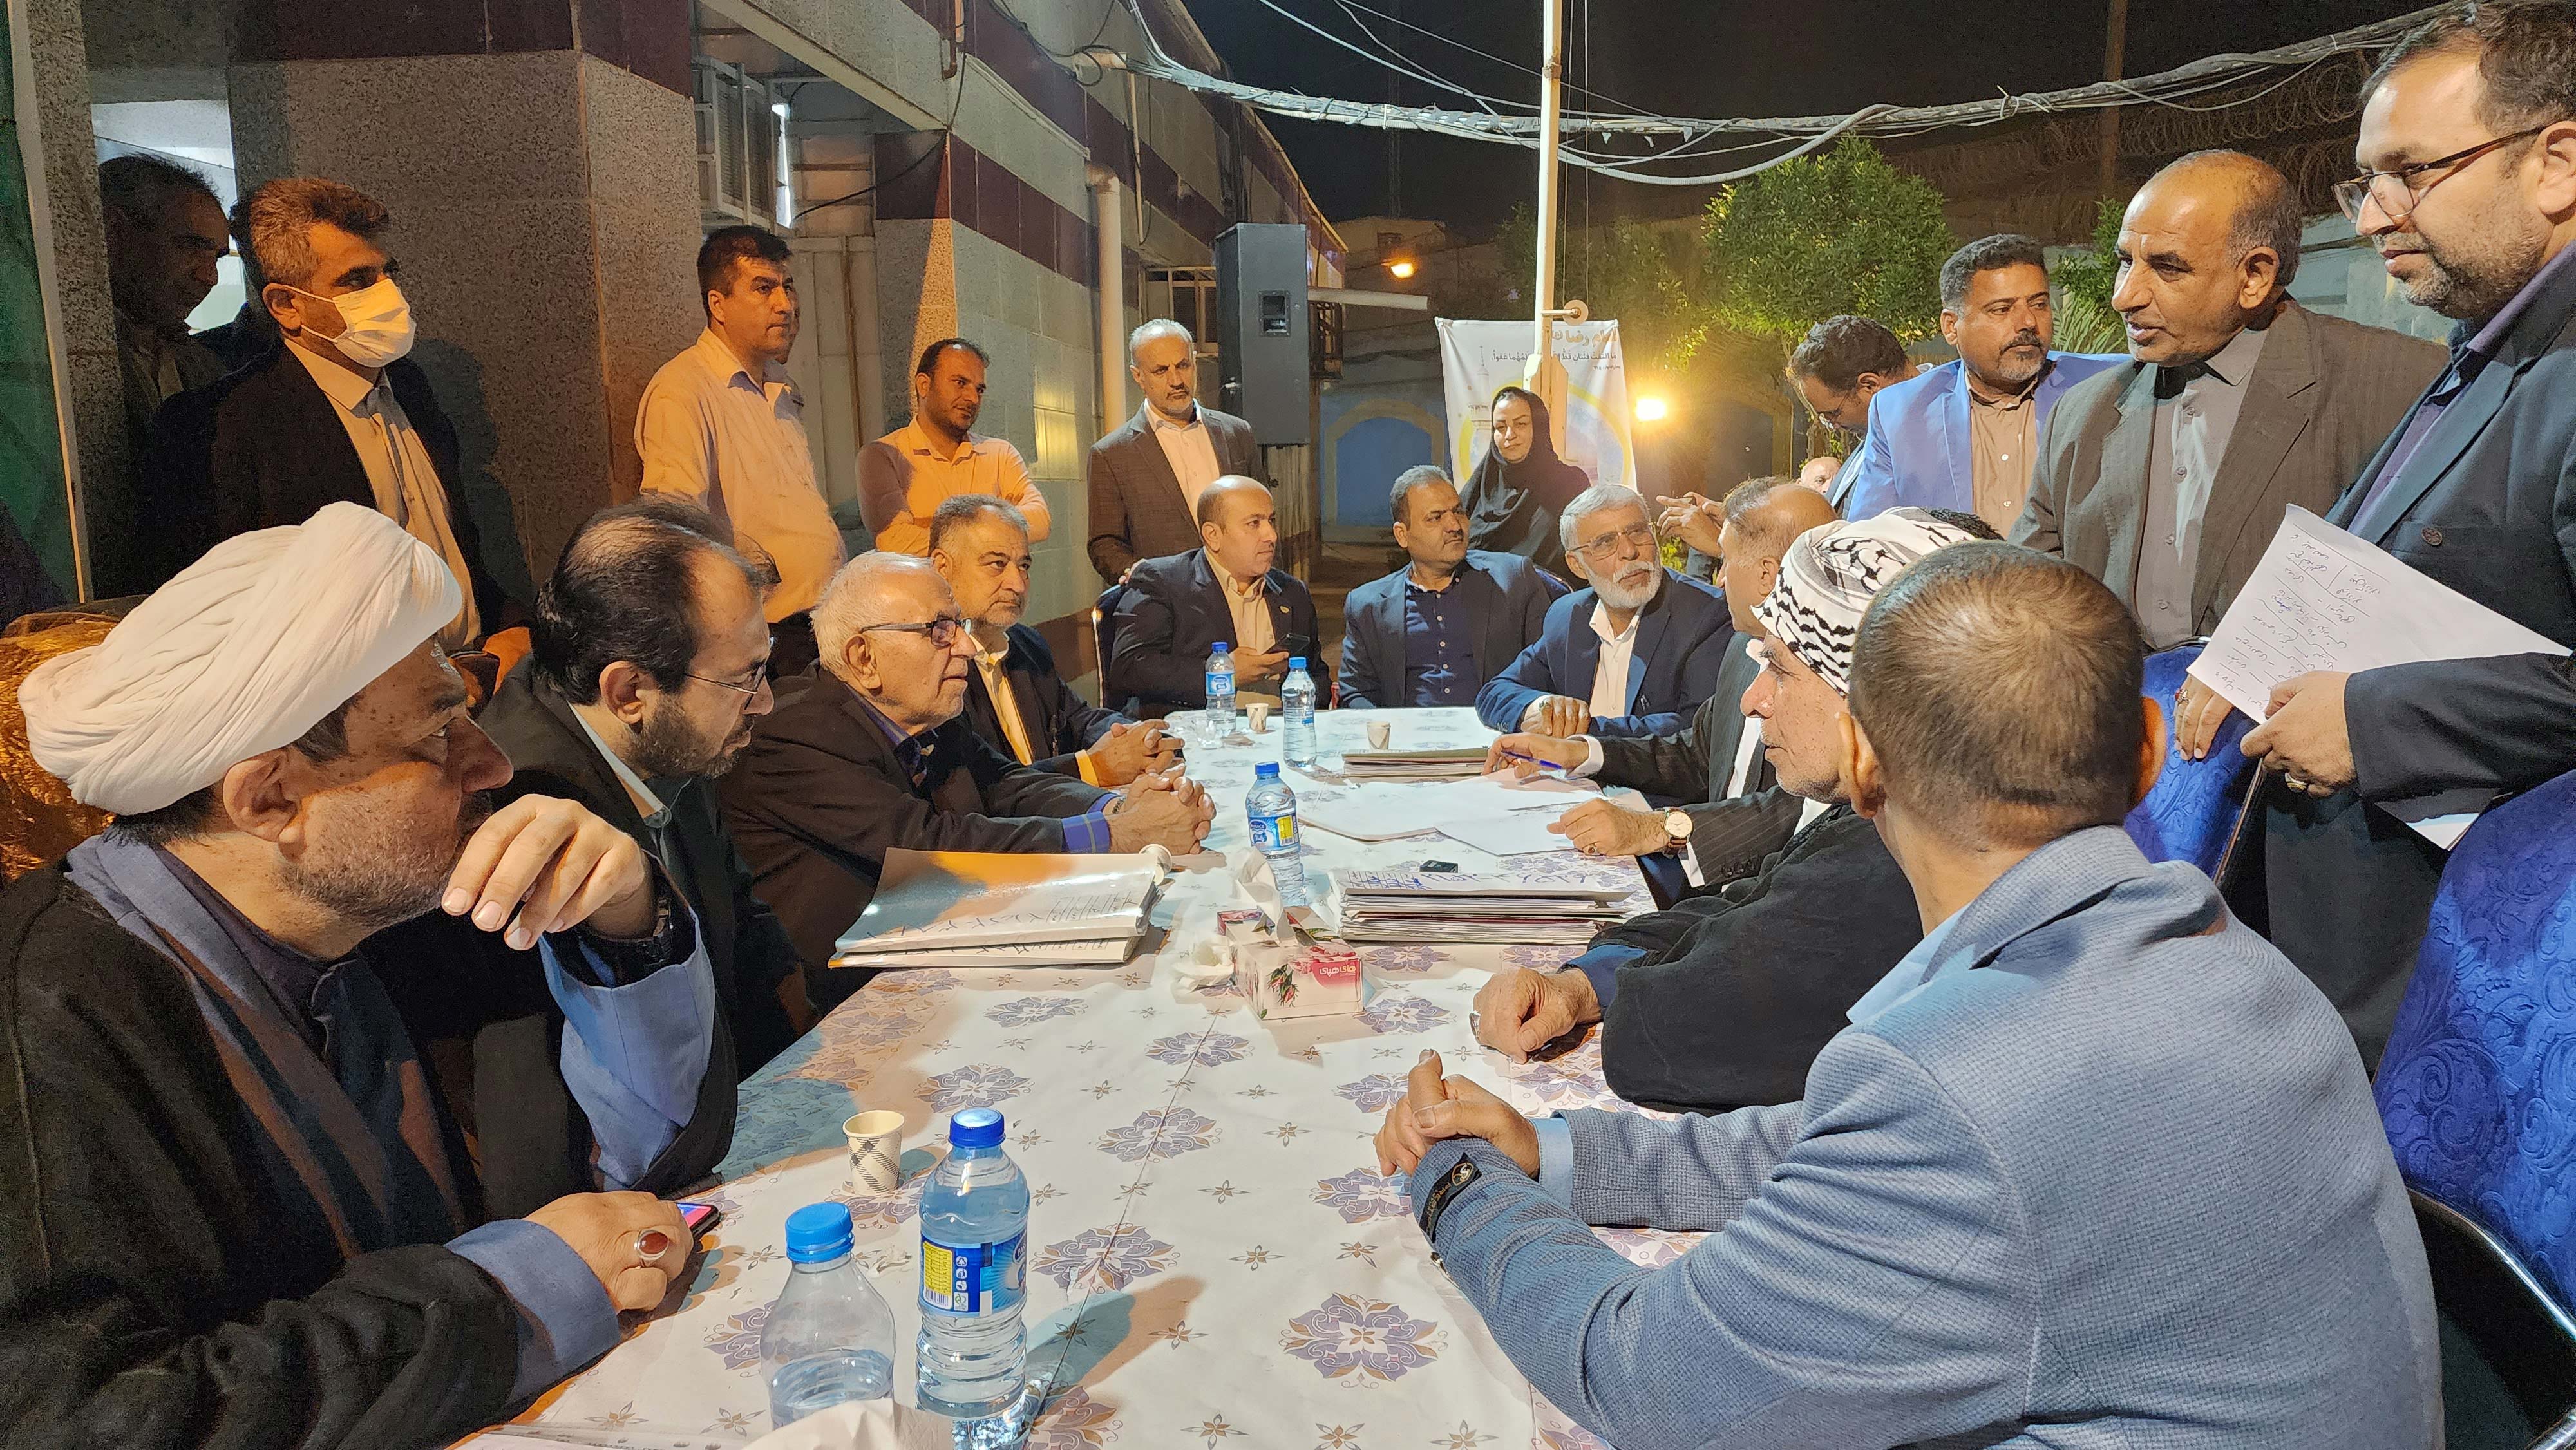 برگزاری بزرگترین اجماع صلح و سازش پروندهای قصاص در زندانهای خوزستان